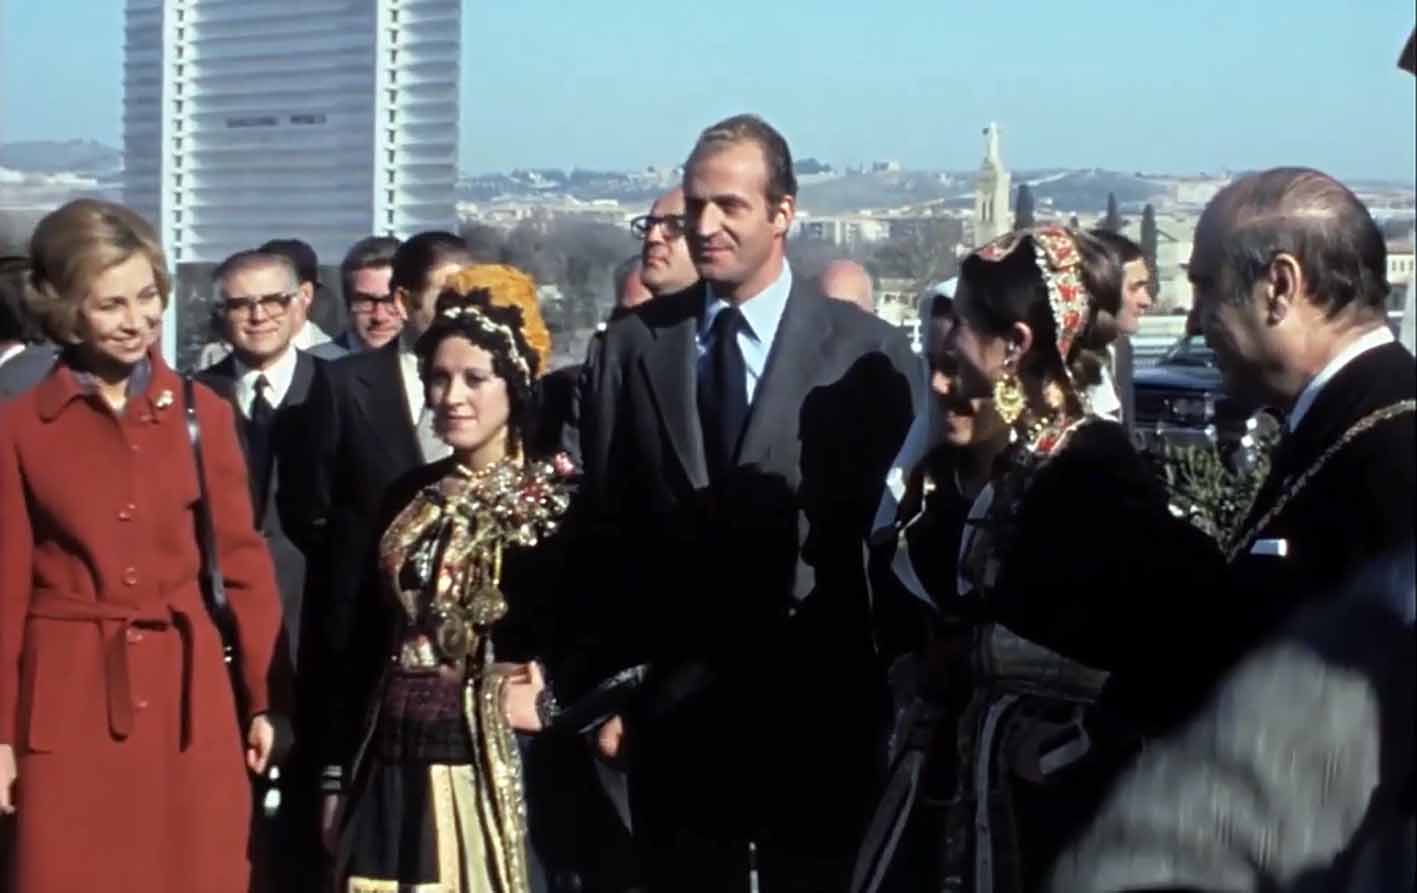 Fotograma de los Reyes inaugurando el Puente de la Cava de Toledo en 1976